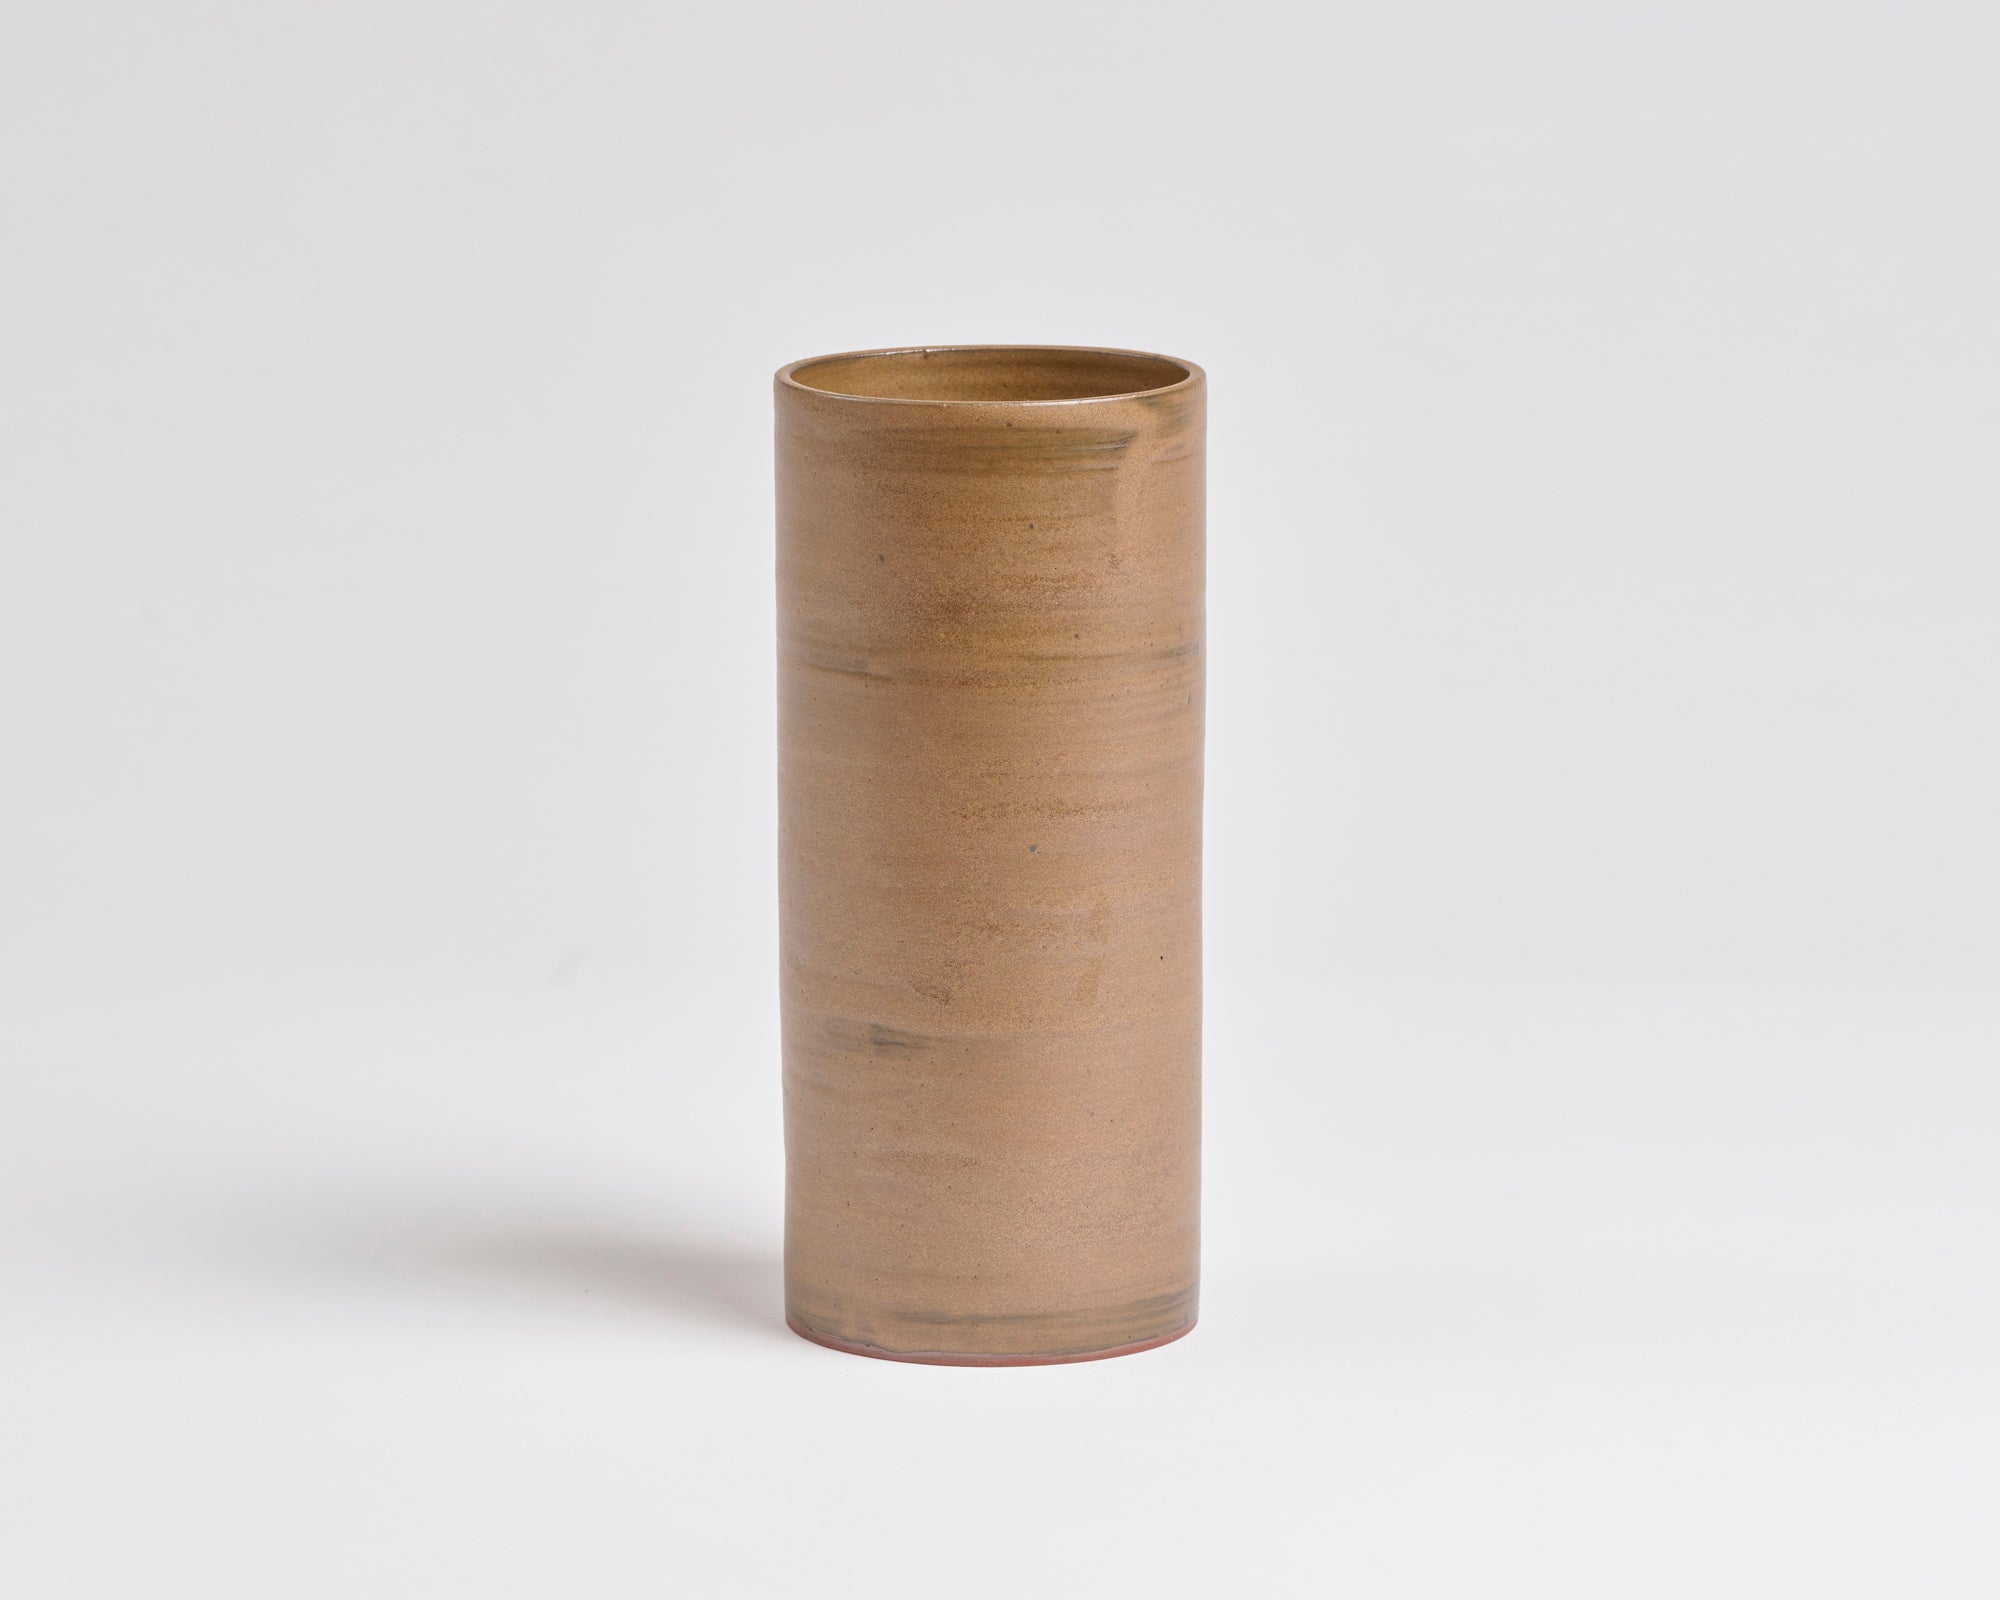 Szilvassy Ceramic Vessel 004 - Rutile Brown (Medium)